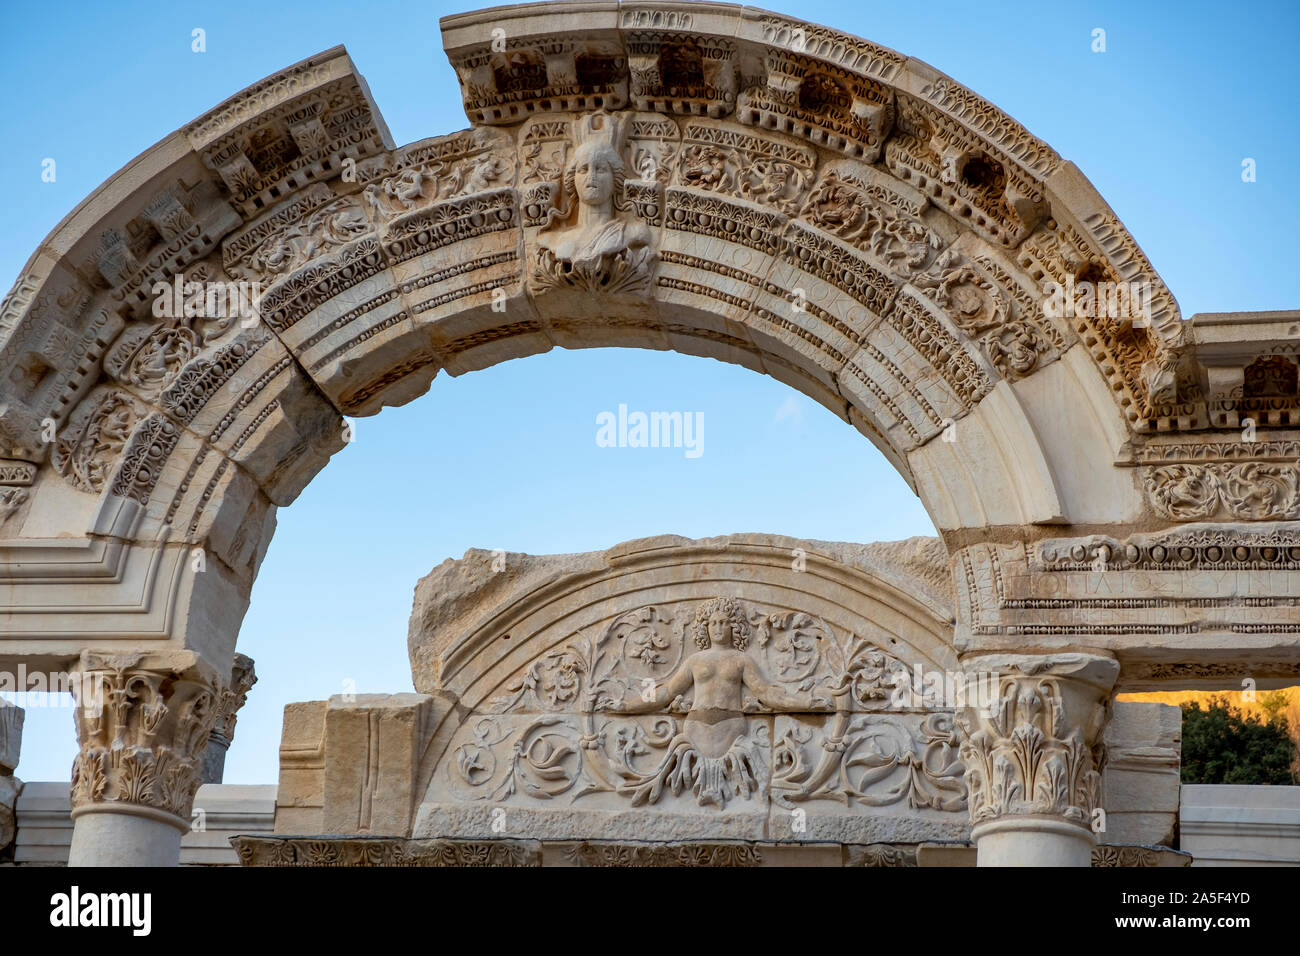 Efeso in Turchia: rilievi in marmo in Efeso storico della città antica, a Selcuk,Izmir, Turchia.La figura di Medusa con ornamenti di foglie di acanto. Foto Stock